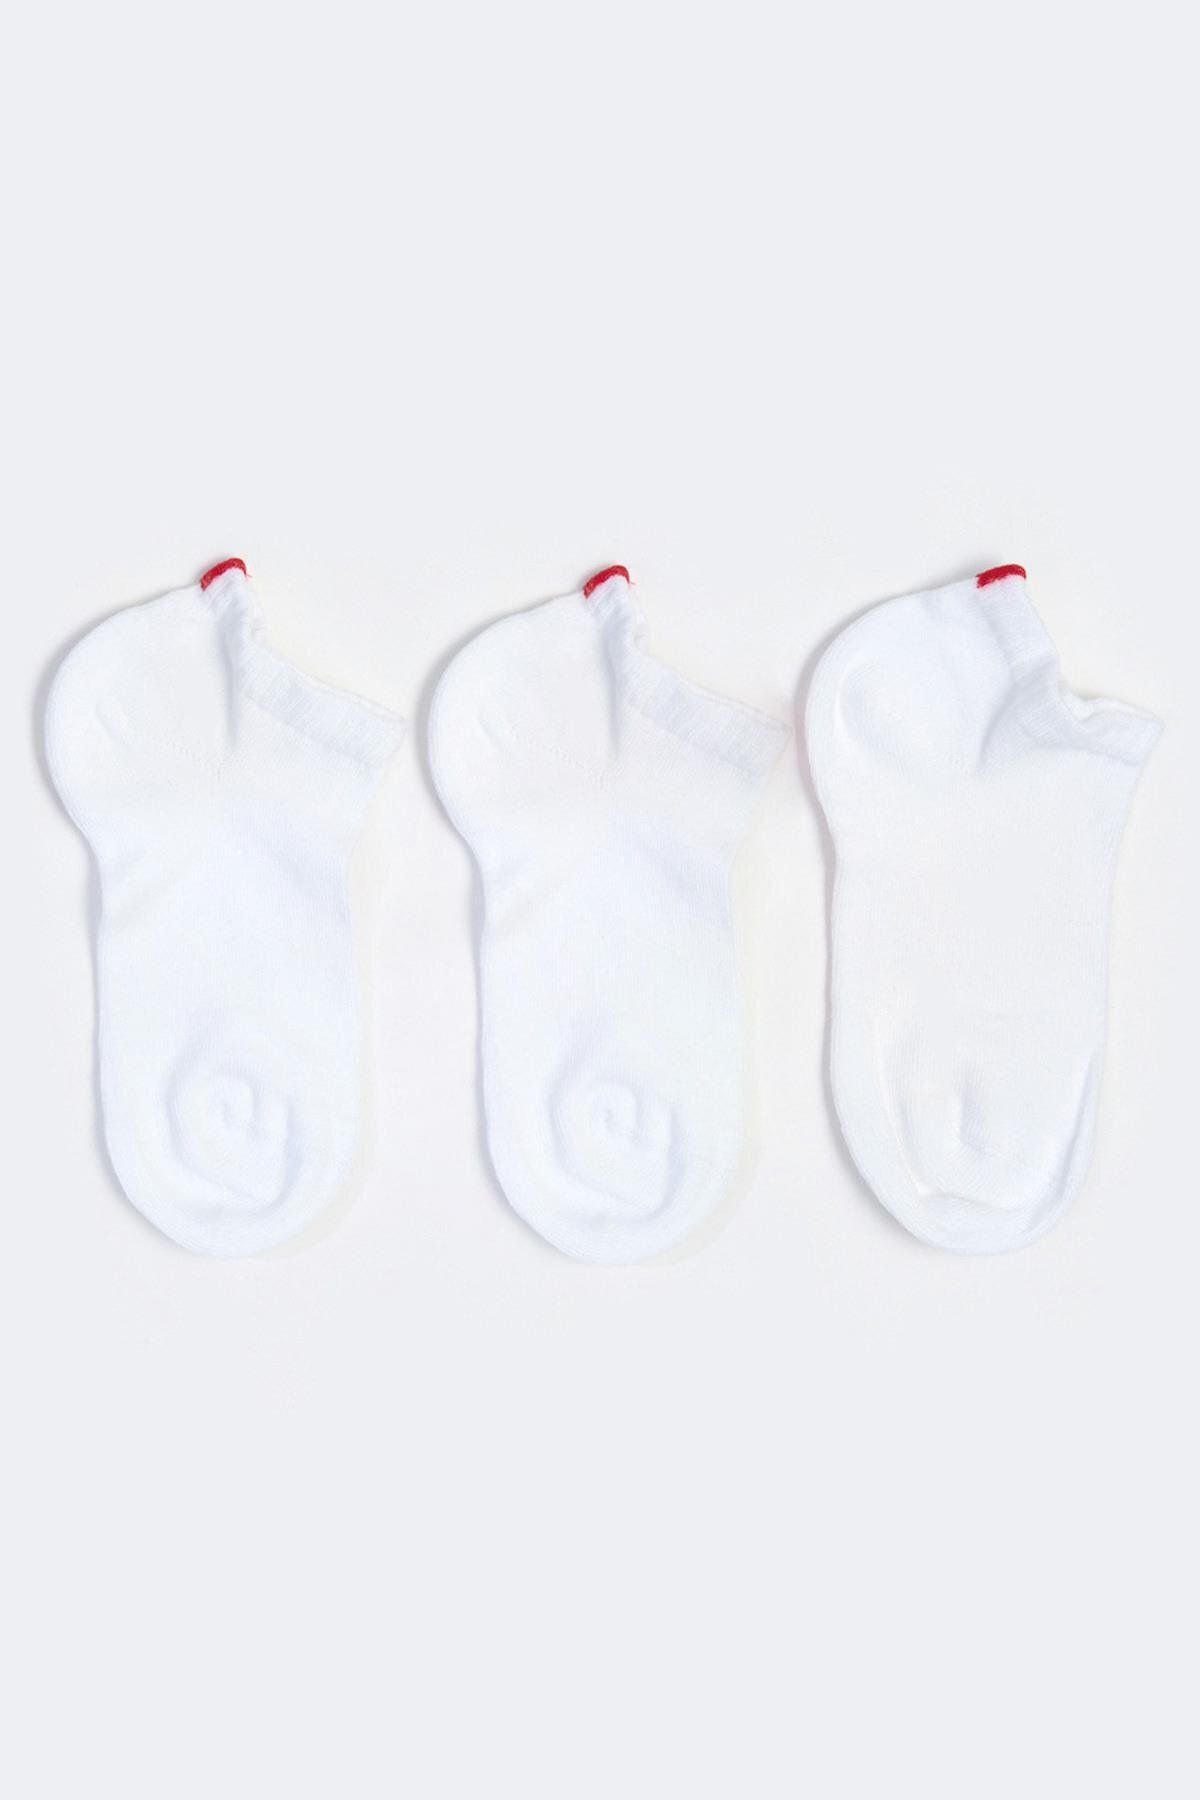 Katia & Bony Run 3 Lü Erkek Basic Patik Çorap Beyaz/beyaz/beyaz